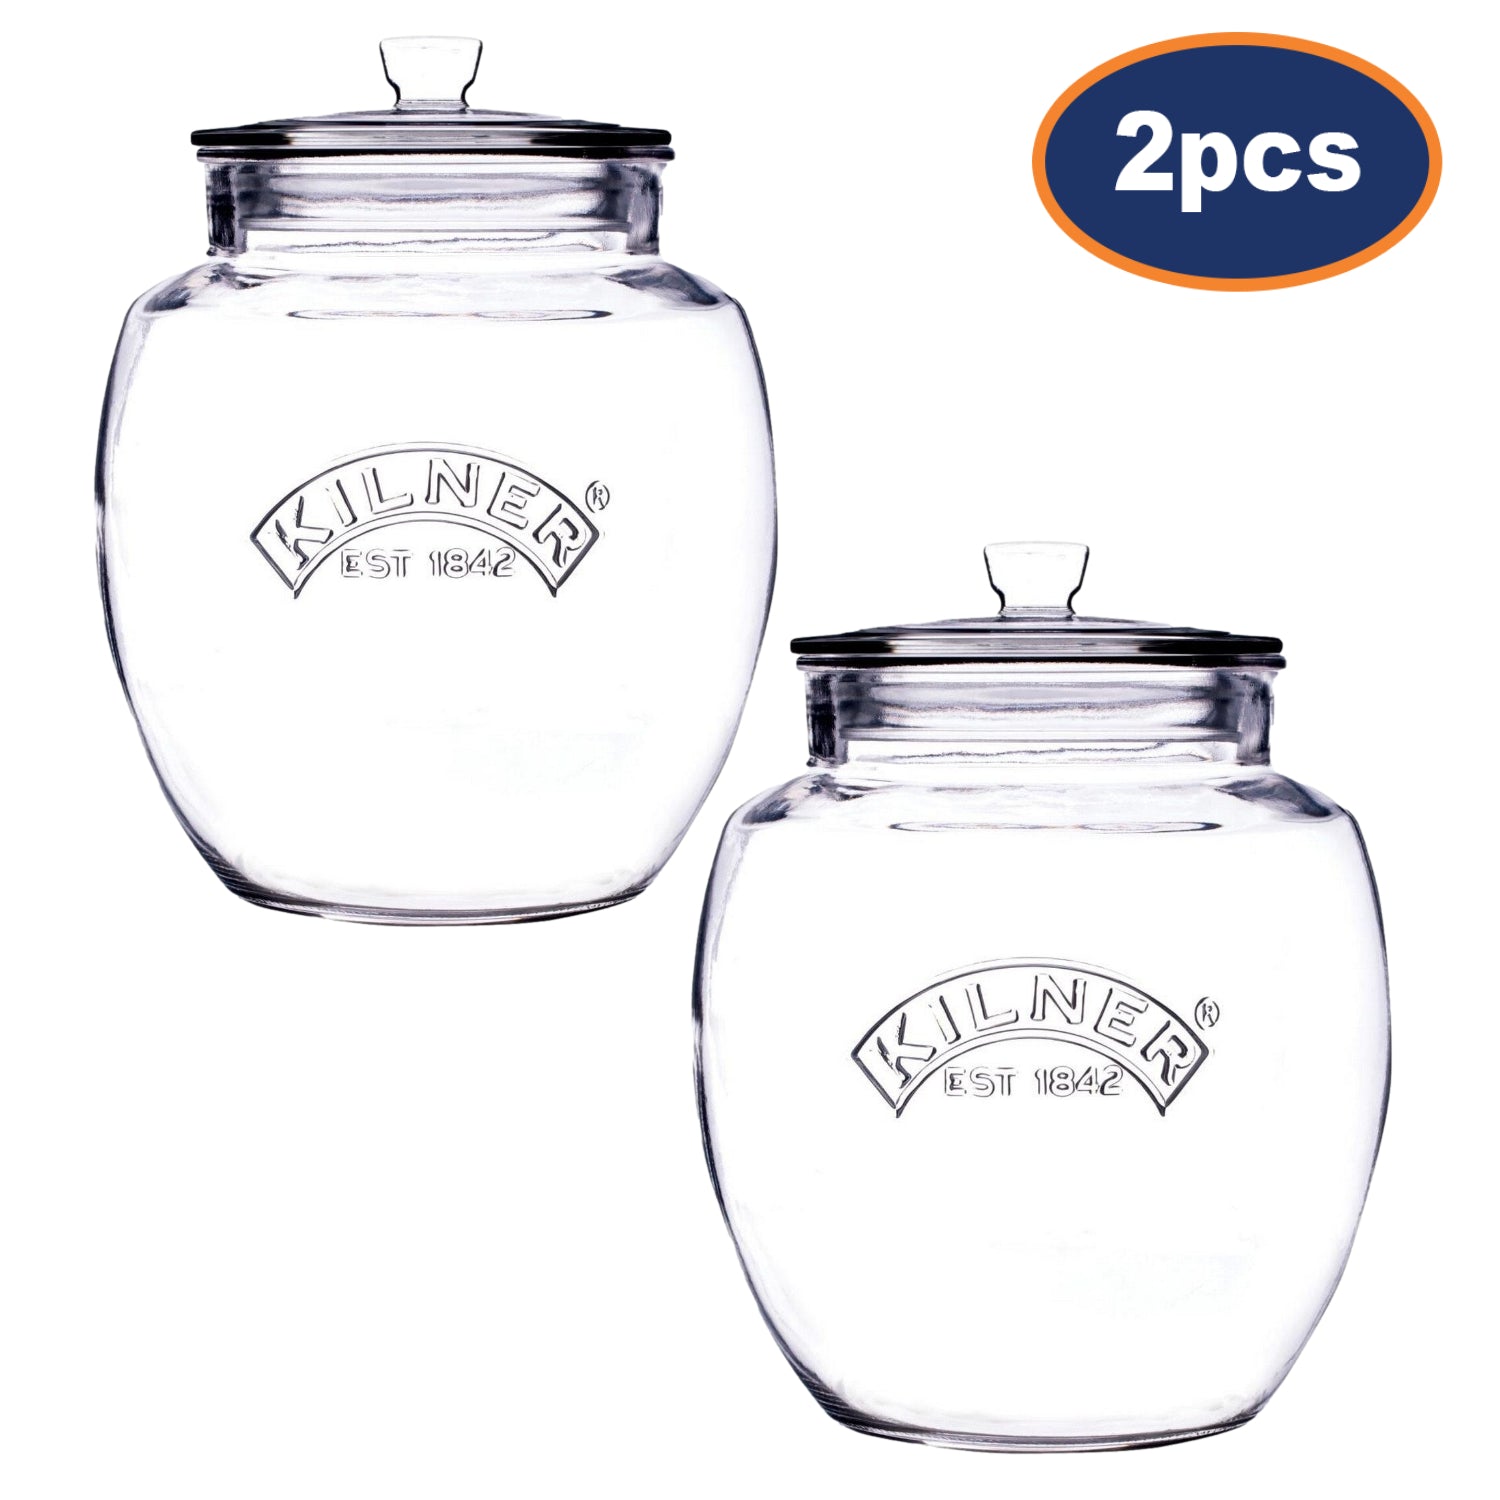 2Pcs Kilner 2L Glass Lid Airtight Storage Jars